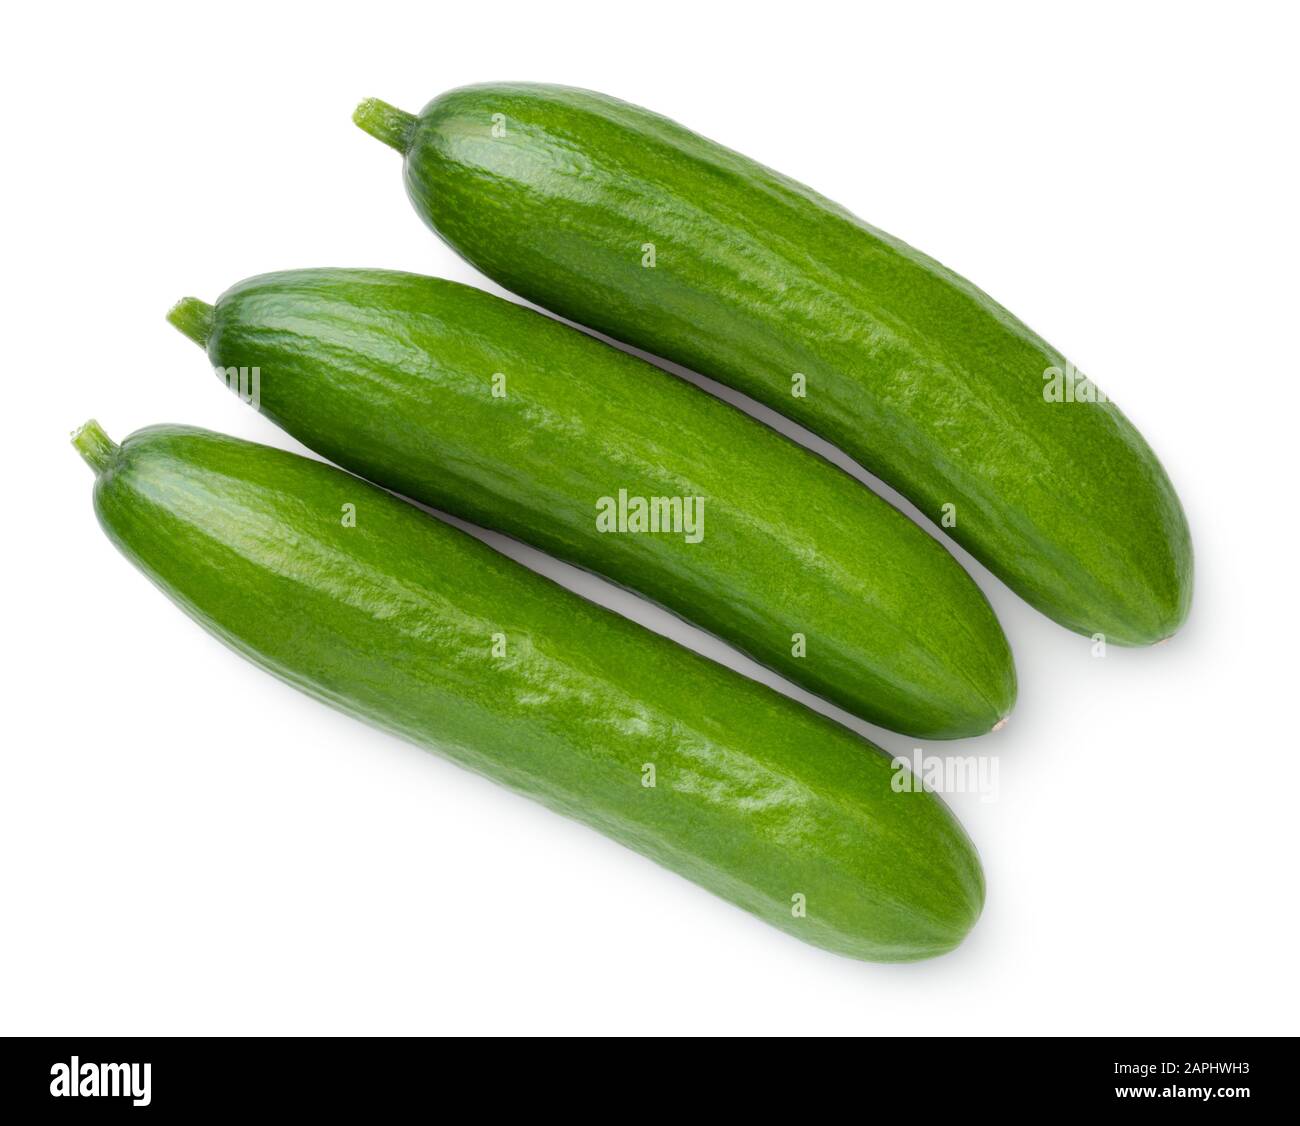 Fresh mini cucumbers stock image. Image of background - 24516521